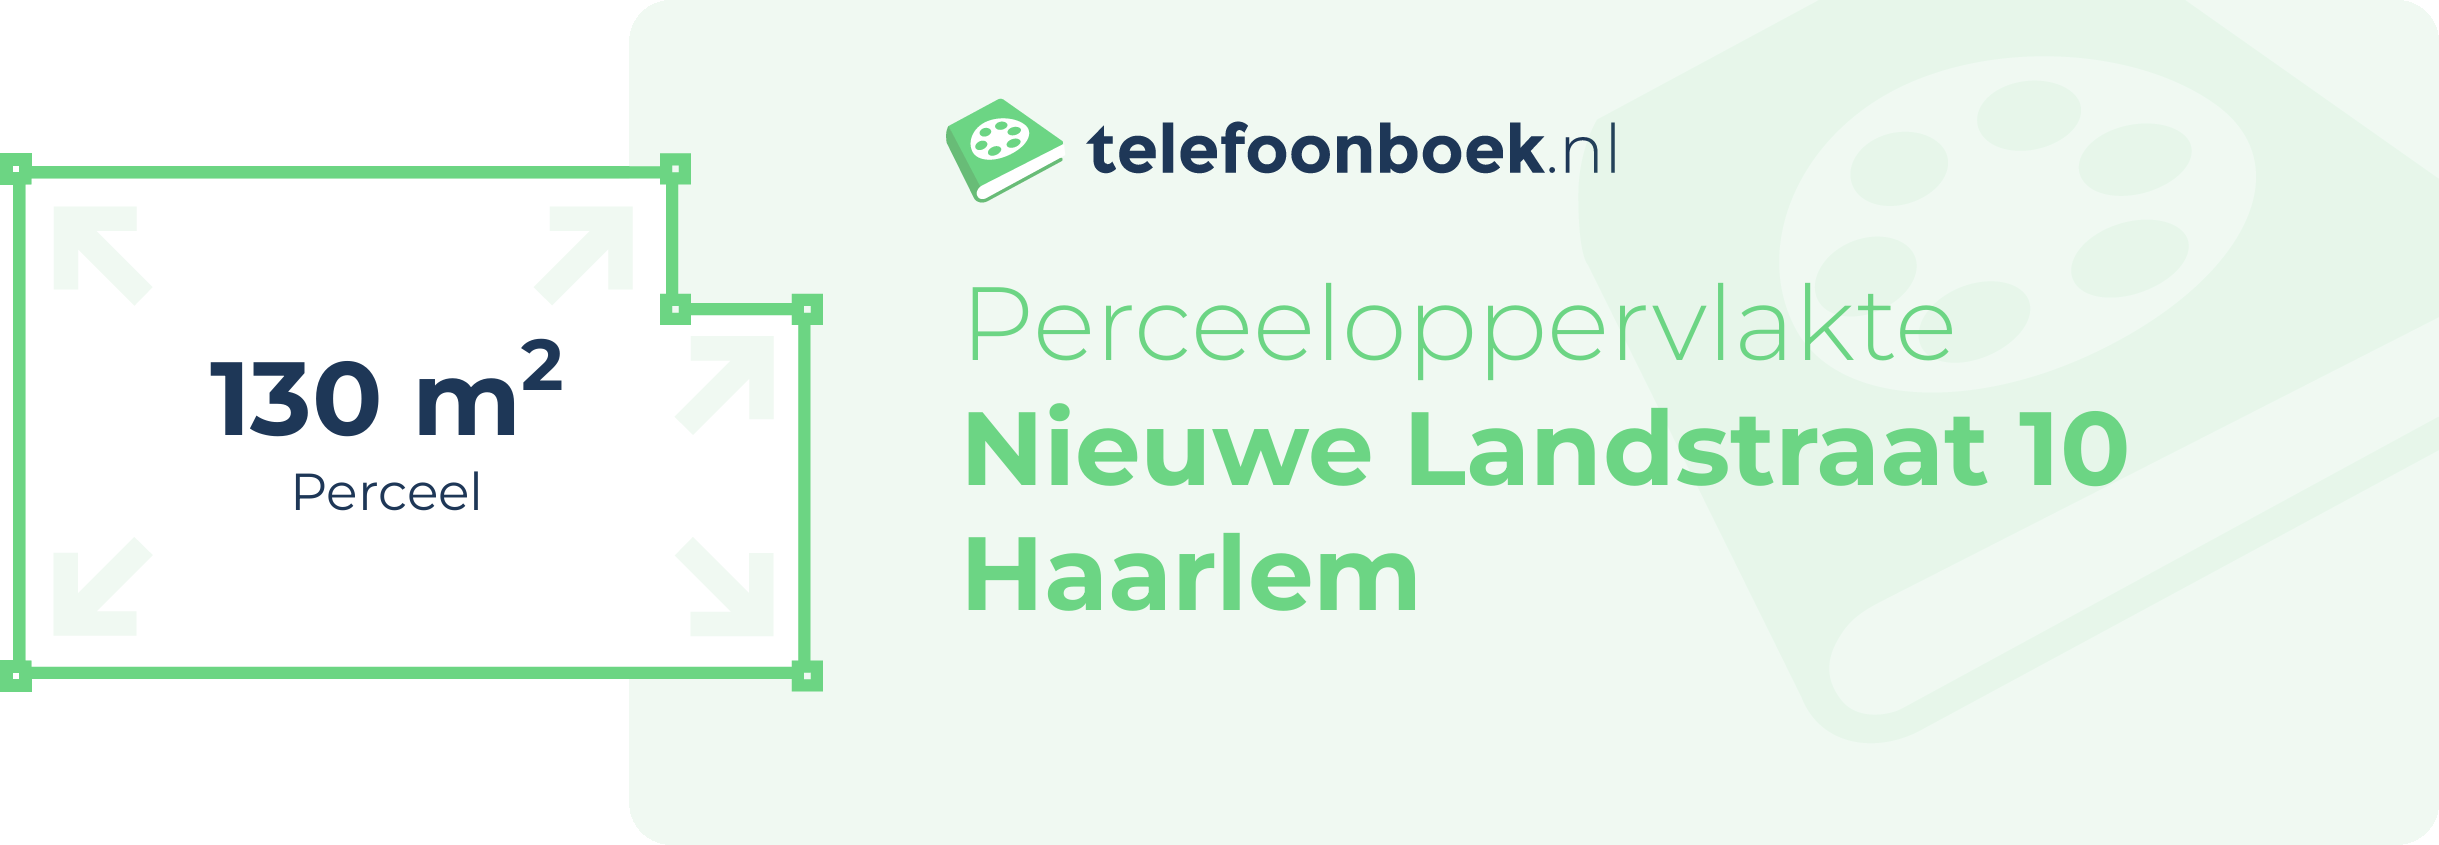 Perceeloppervlakte Nieuwe Landstraat 10 Haarlem